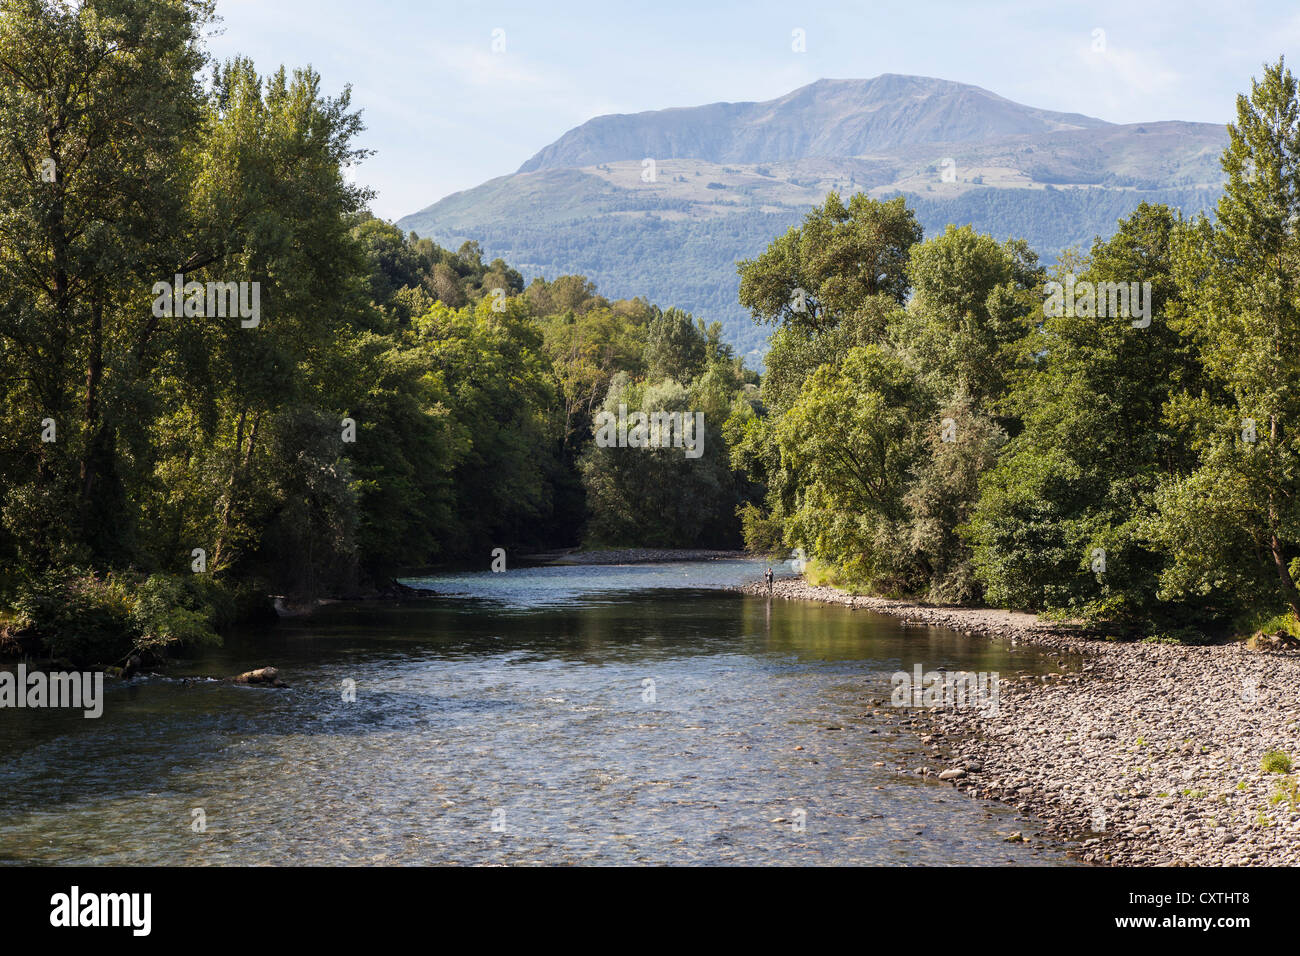 River Gave de Pau near Lourdes, Hautes Pyrenees, France Stock Photo - Alamy